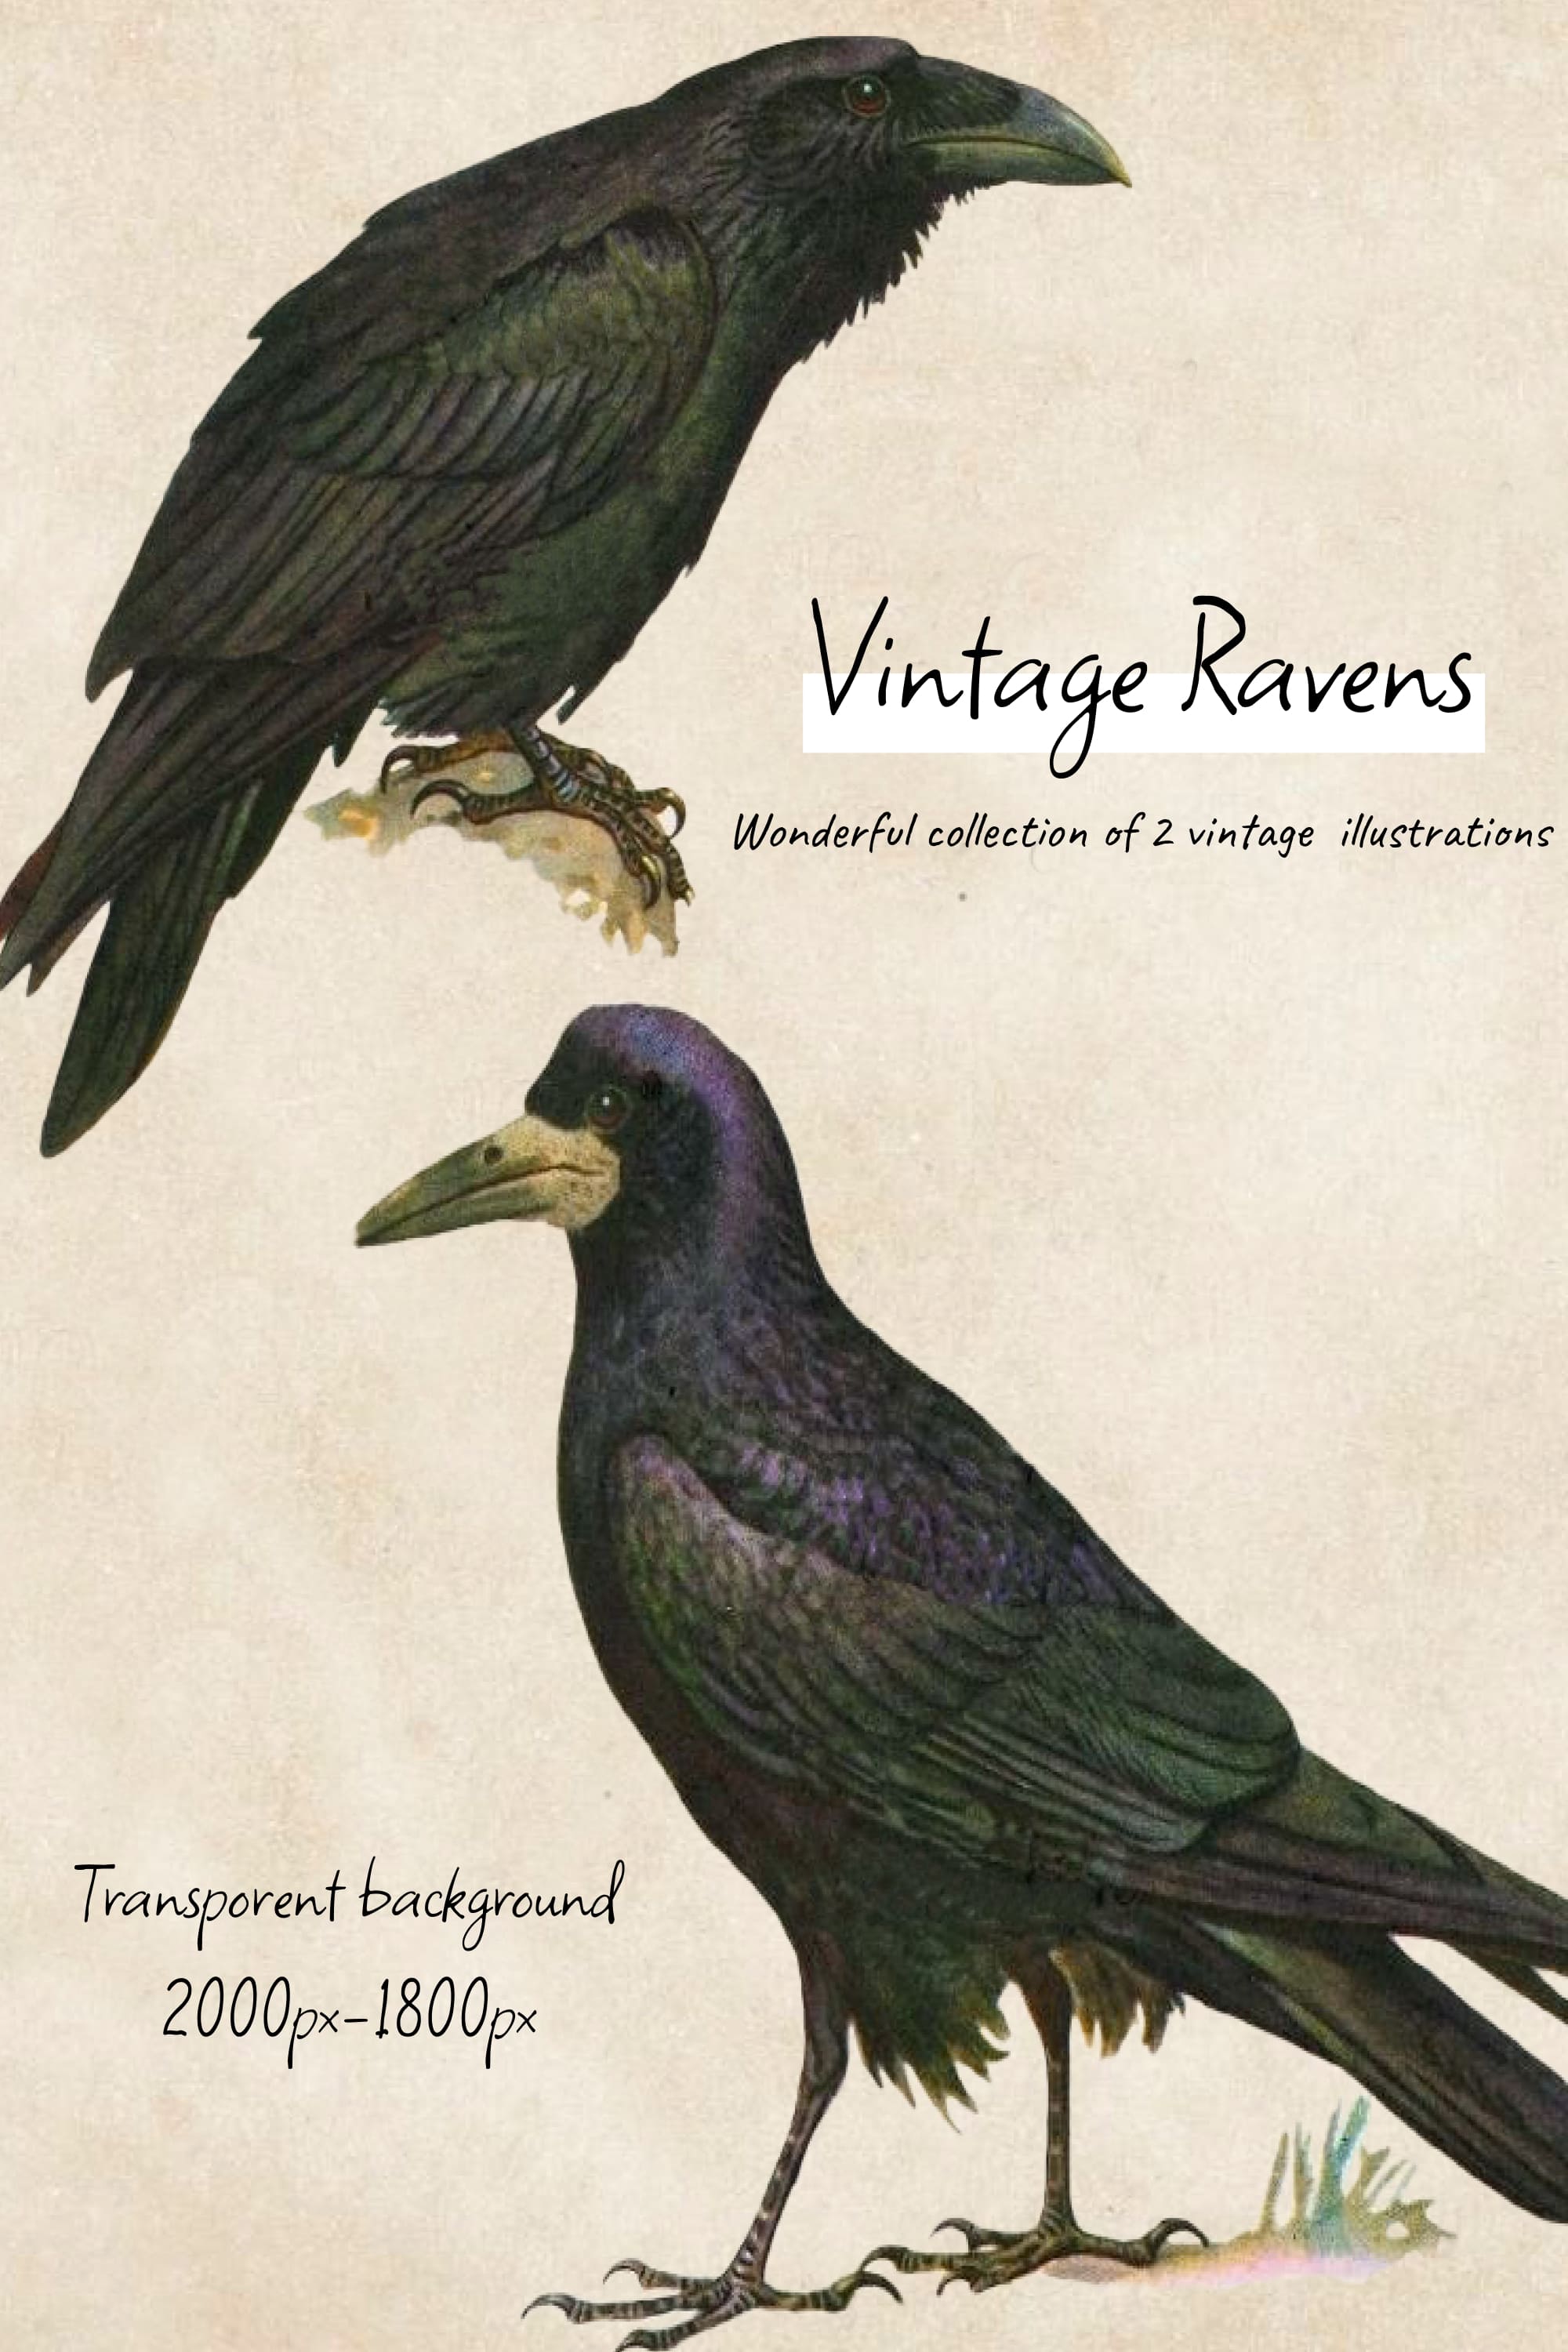 Vintage ravens illustrations - pinterest image preview.